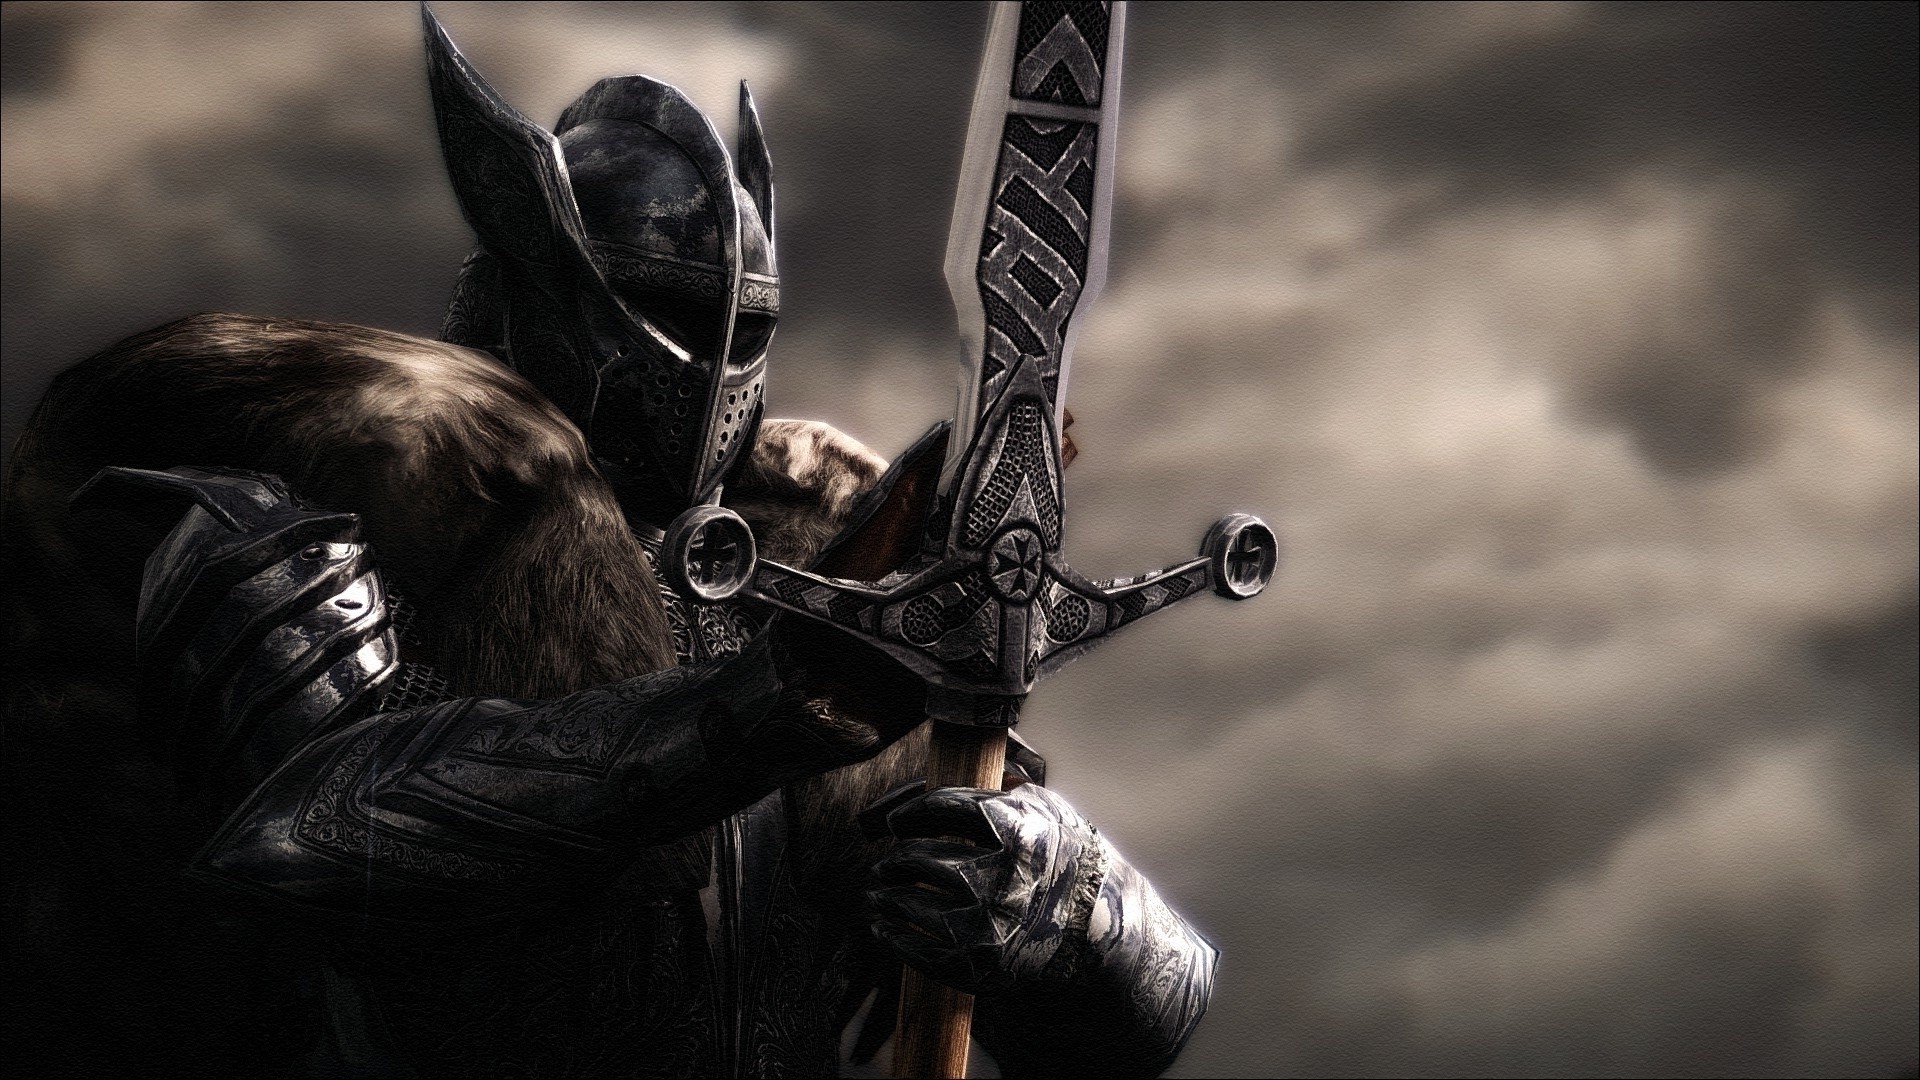 knight, Knights, Warrior, Armor, Sword, Helmet, The Elder Scrolls V: Skyrim Wallpaper